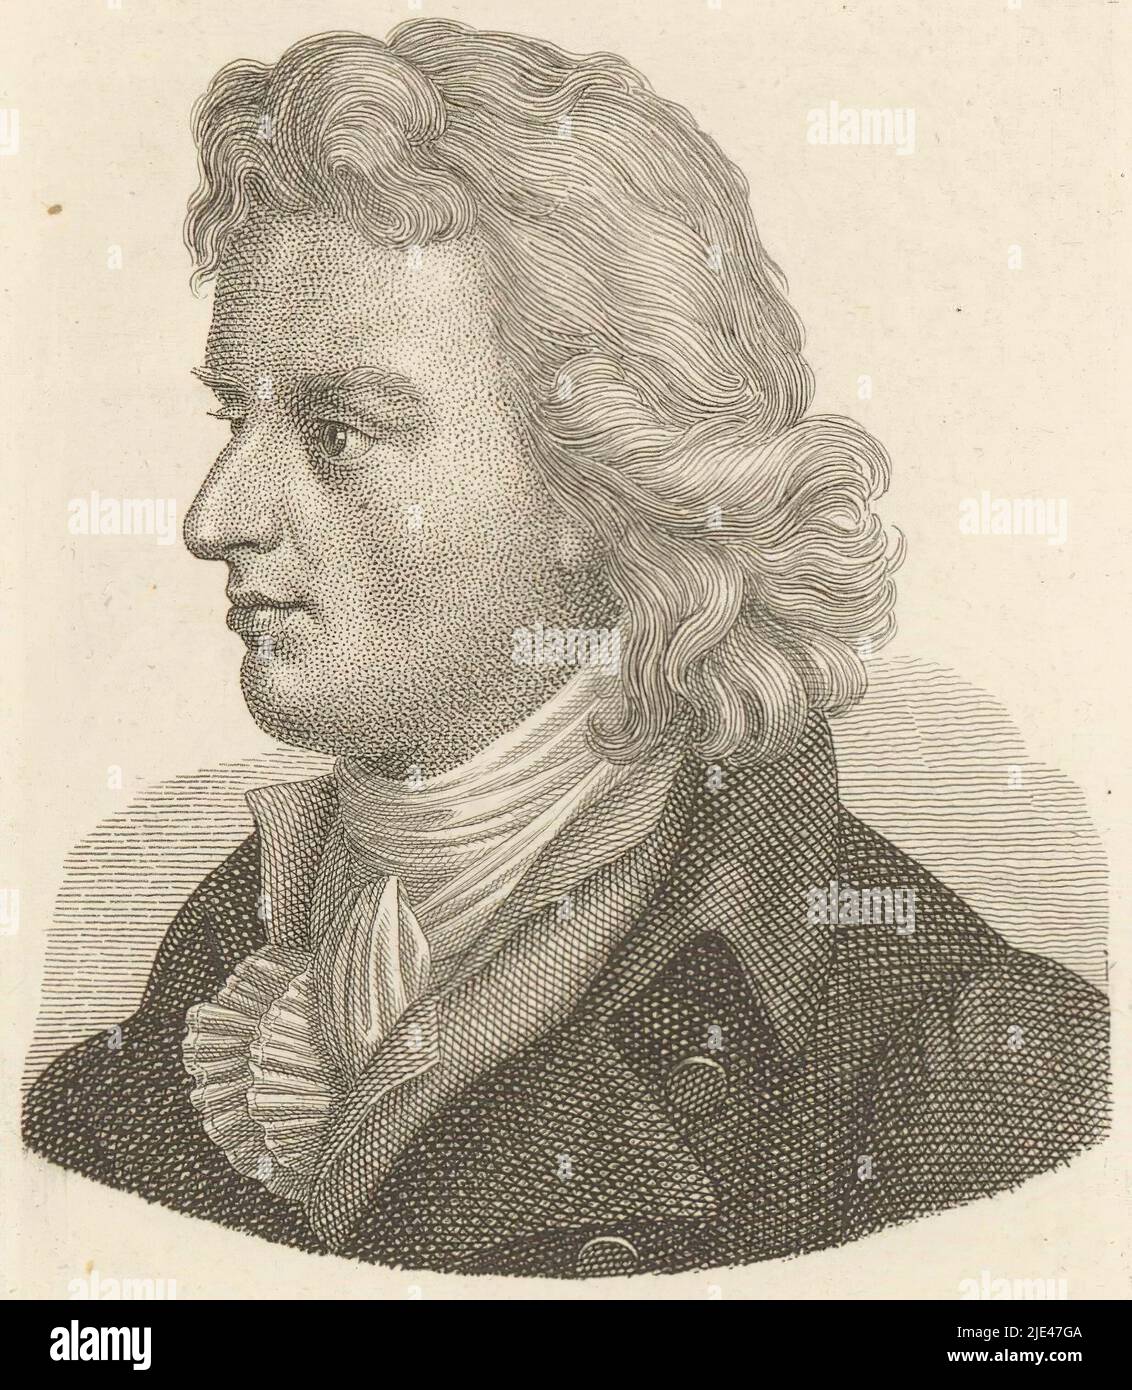 Portrait of Friedrich von Schiller, Ernst Ludwig Riepenhausen, 1775 - 1840, print maker: Ernst Ludwig Riepenhausen, 1775 - 1840, paper, engraving, h 105 mm - w 75 mm Stock Photo